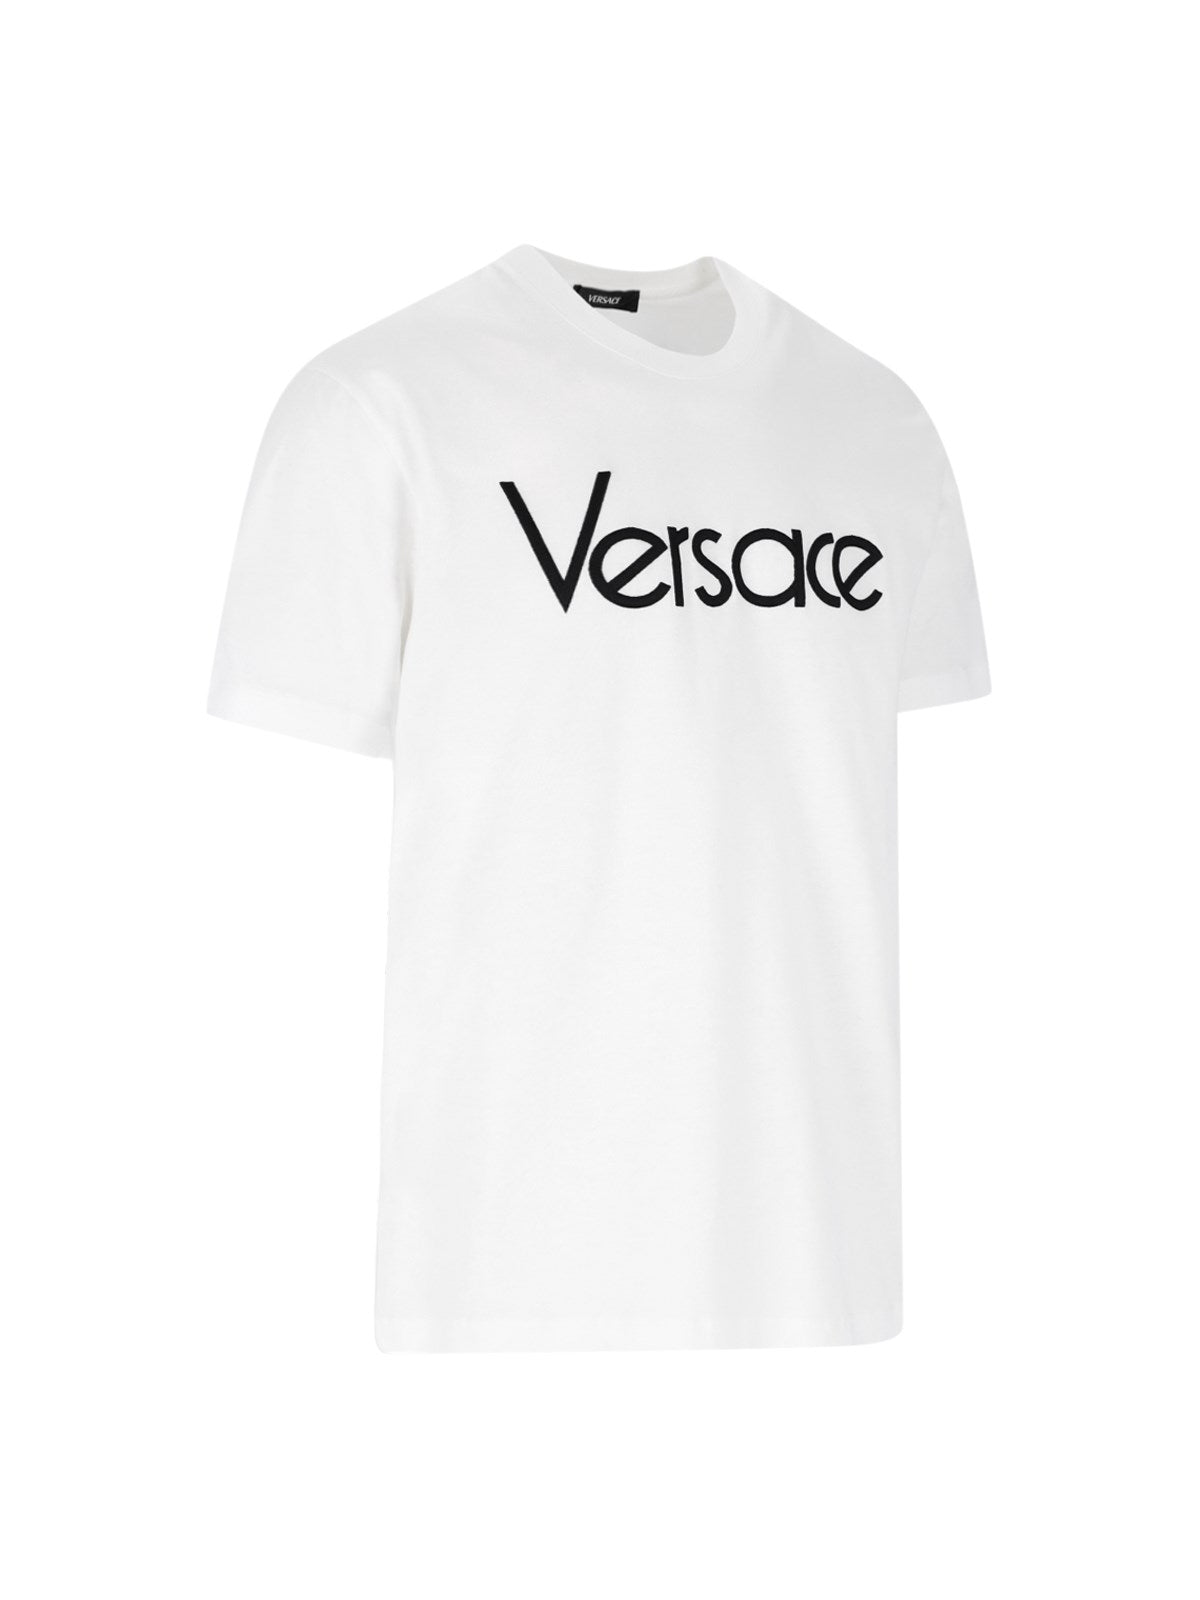 Versace T-Shirt logo-t-shirt-Versace-T-shirt logo Versace, in cotone bianco, girocollo, maniche corte, stampa logo applicata fronte, patch logo applicato fondo, orlo dritto.-Dresso